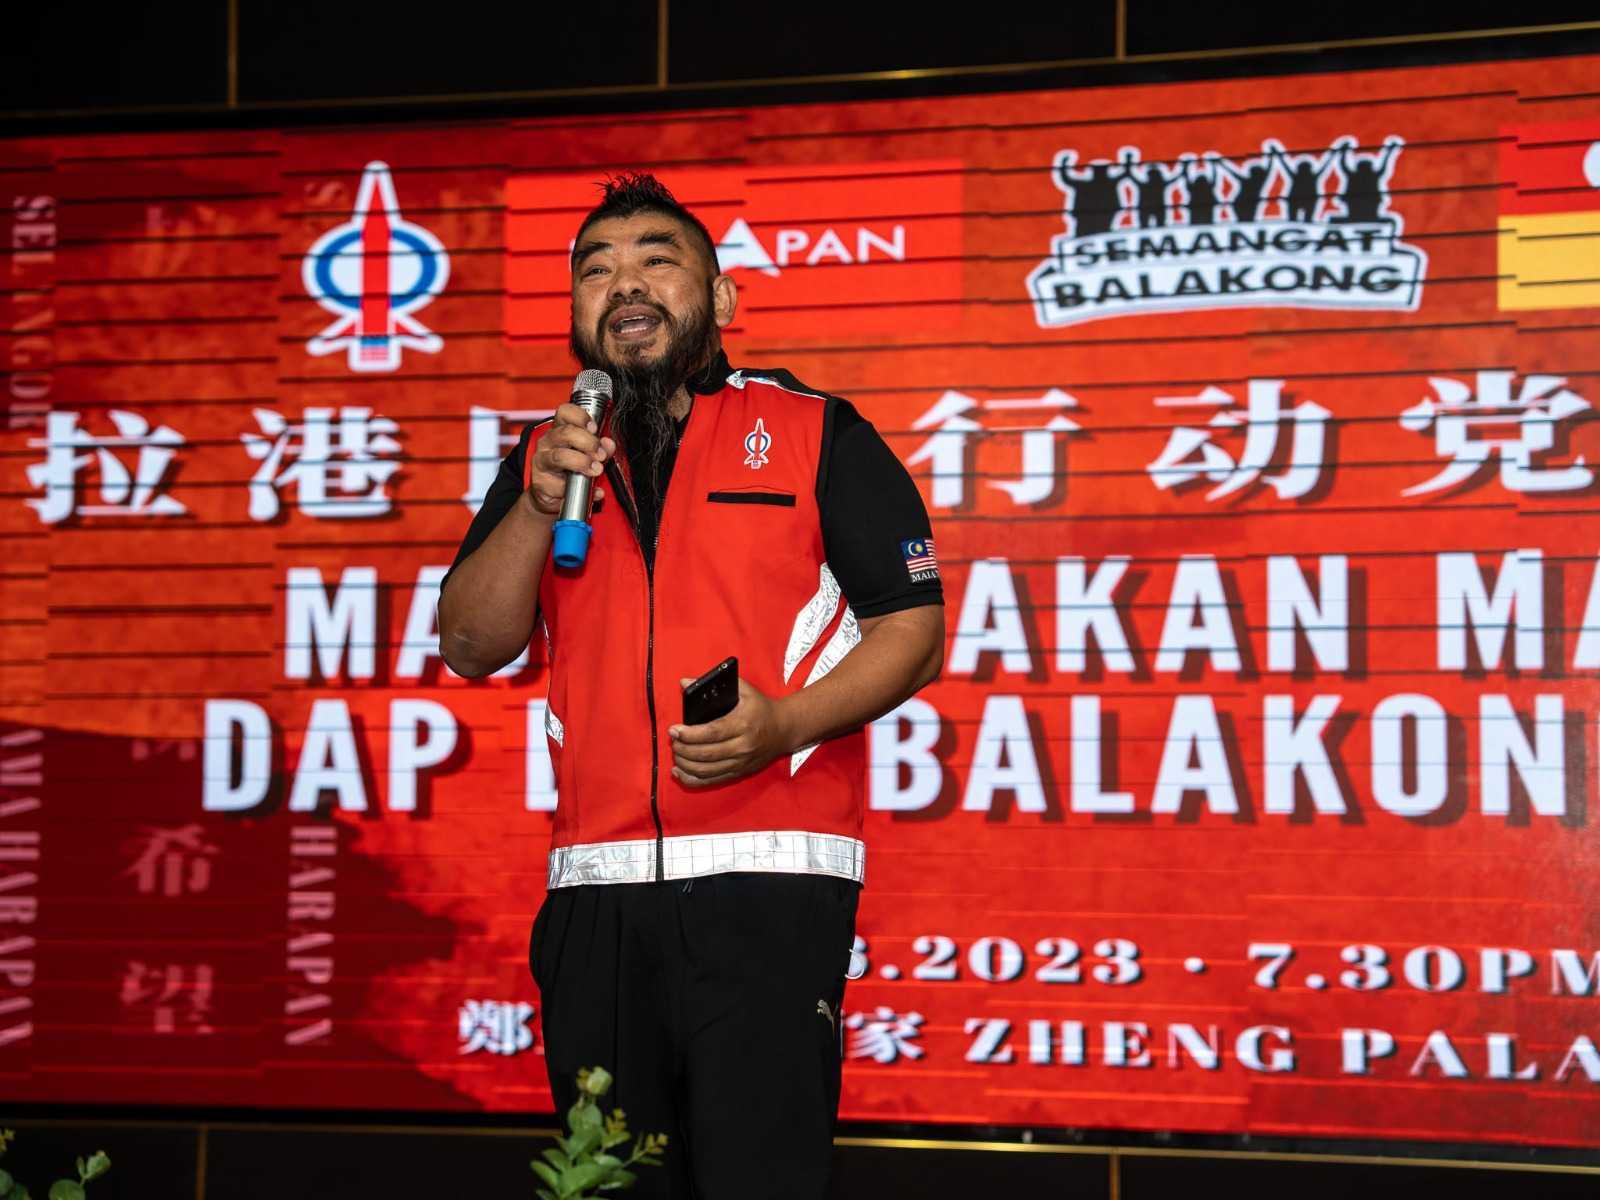 DAP-balakong-speech